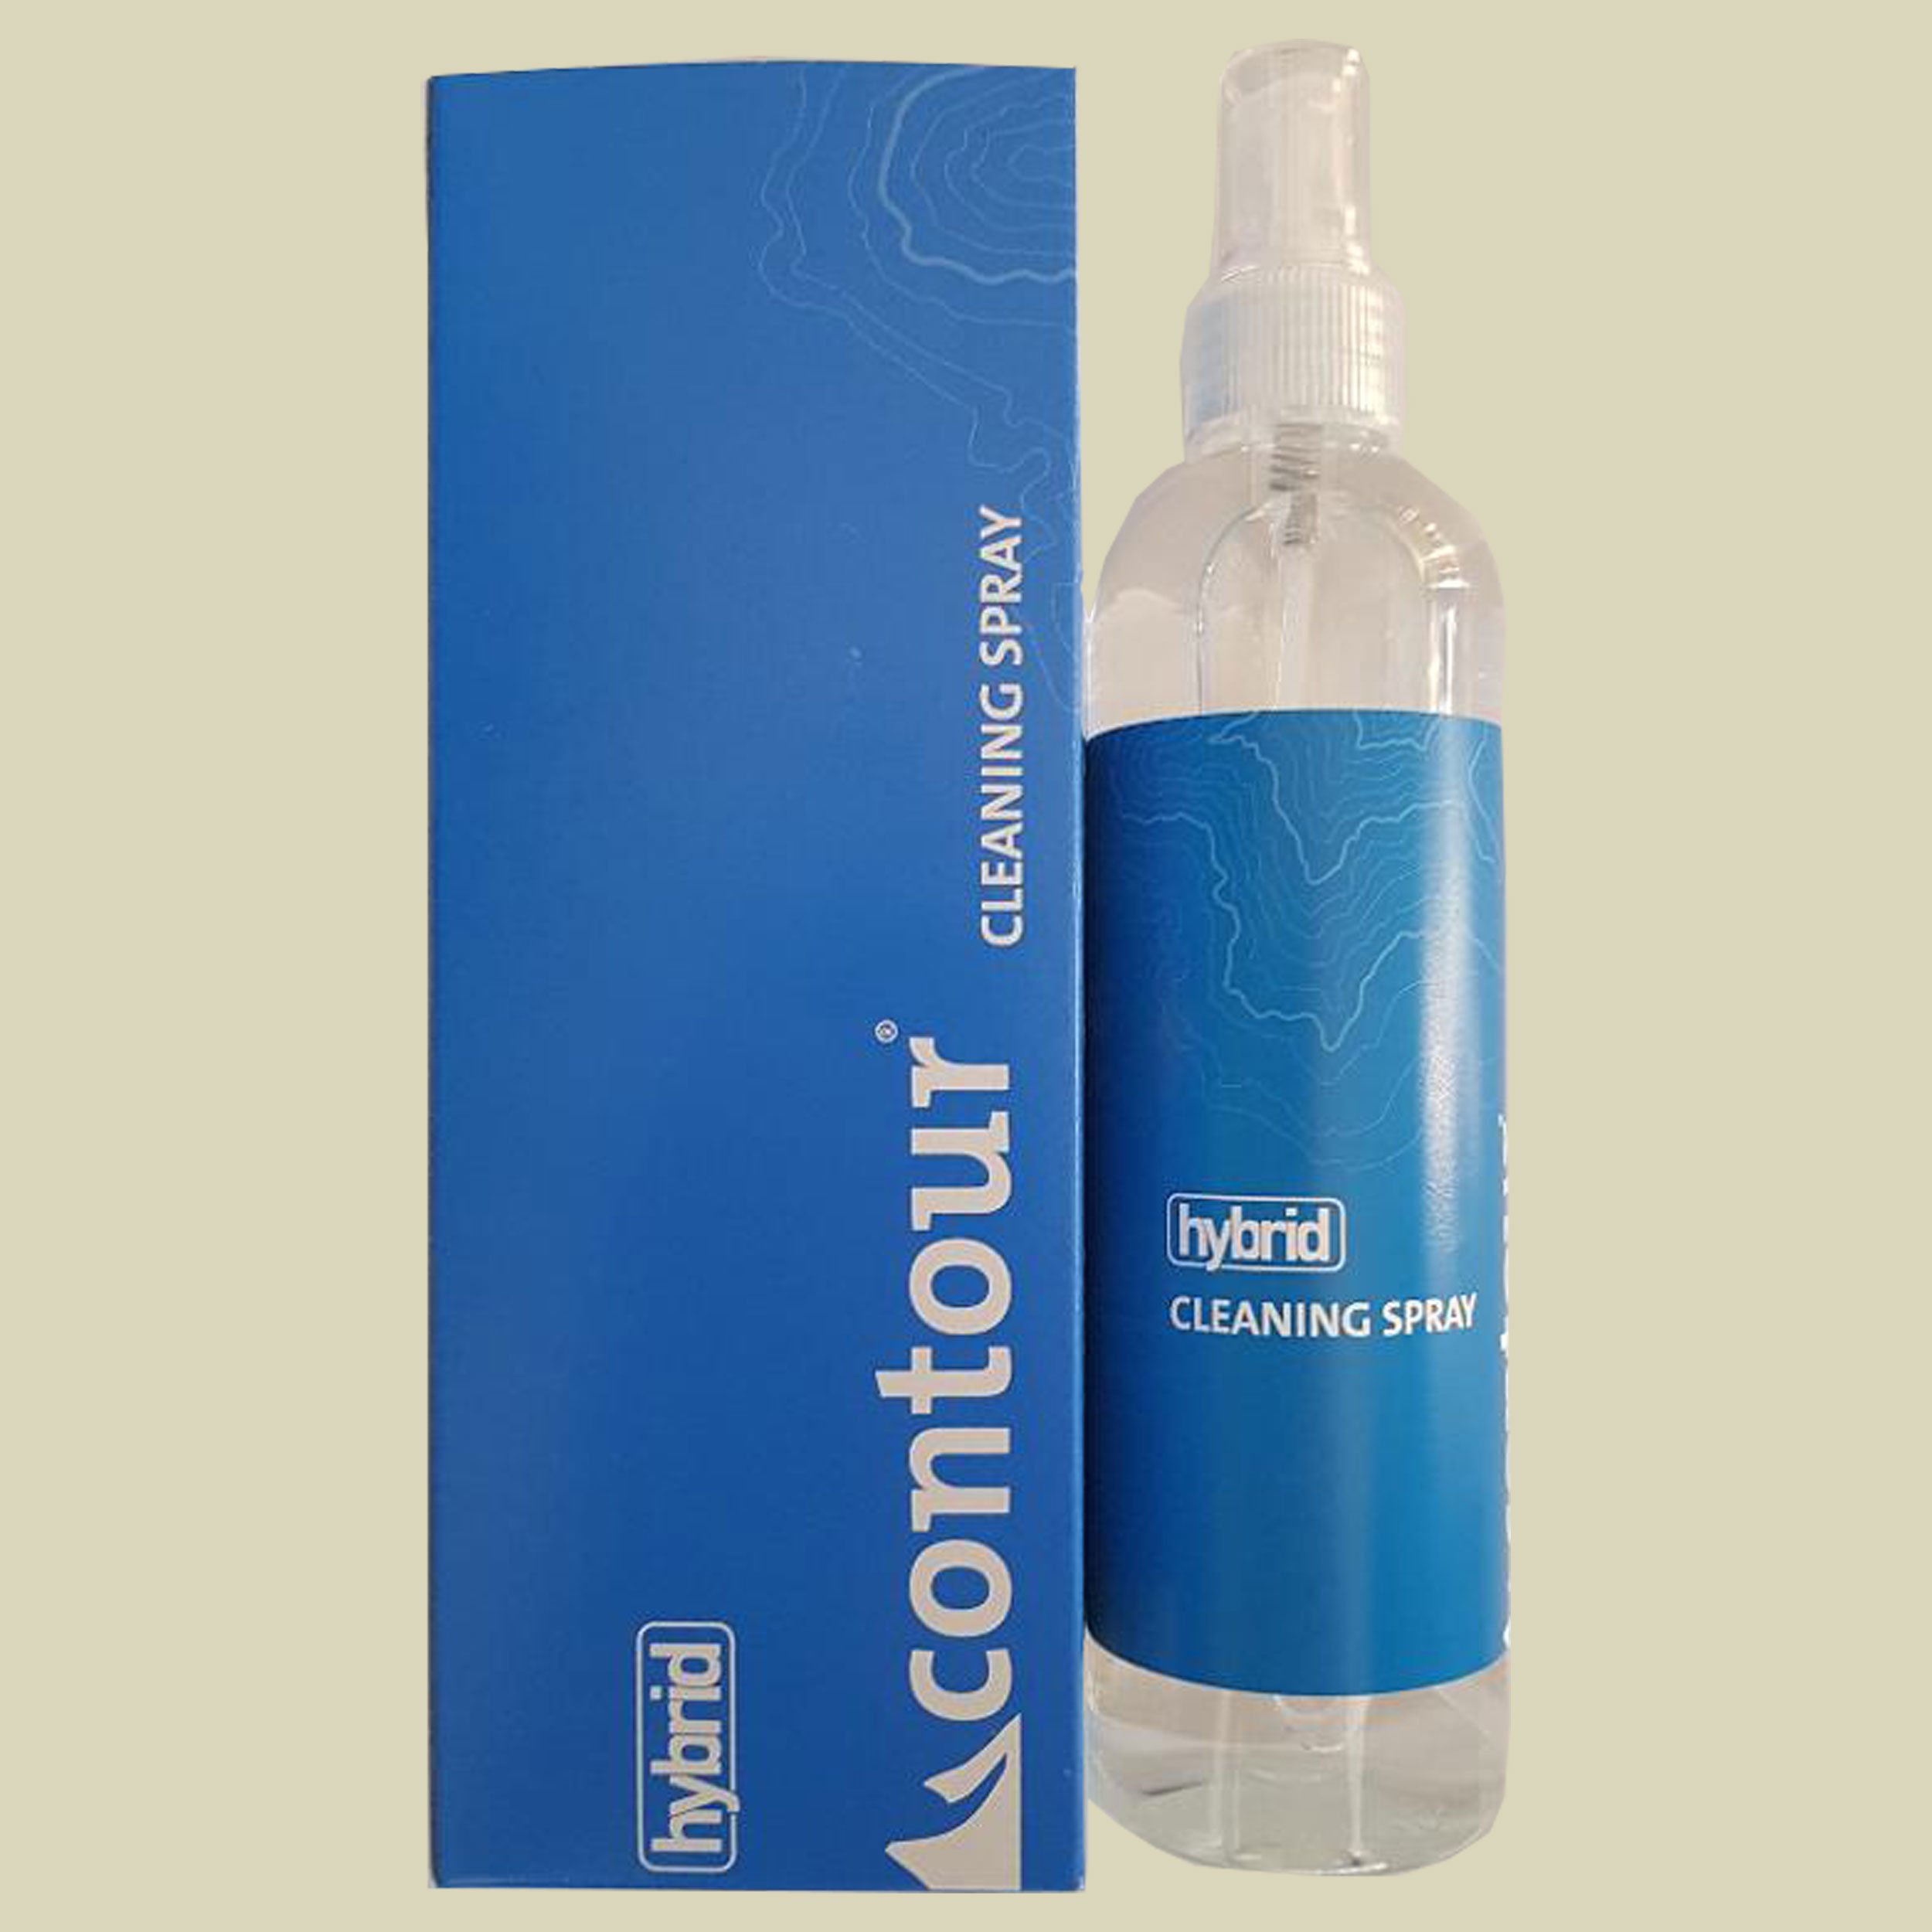 contour Hybrid Cleaning Spray 300ml Inhalt 300 ml